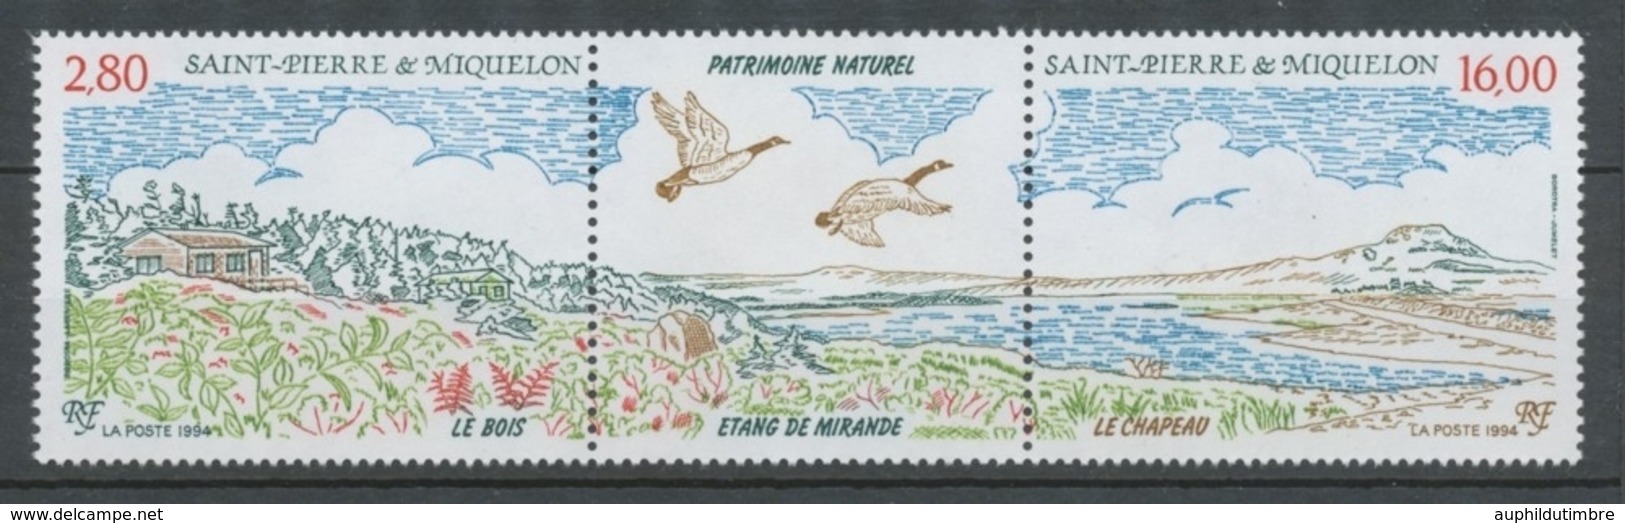 SPM  N°604A Patrimoine Naturel Des Iles St-Pierre-et-Miquelon ZC604A - Unused Stamps